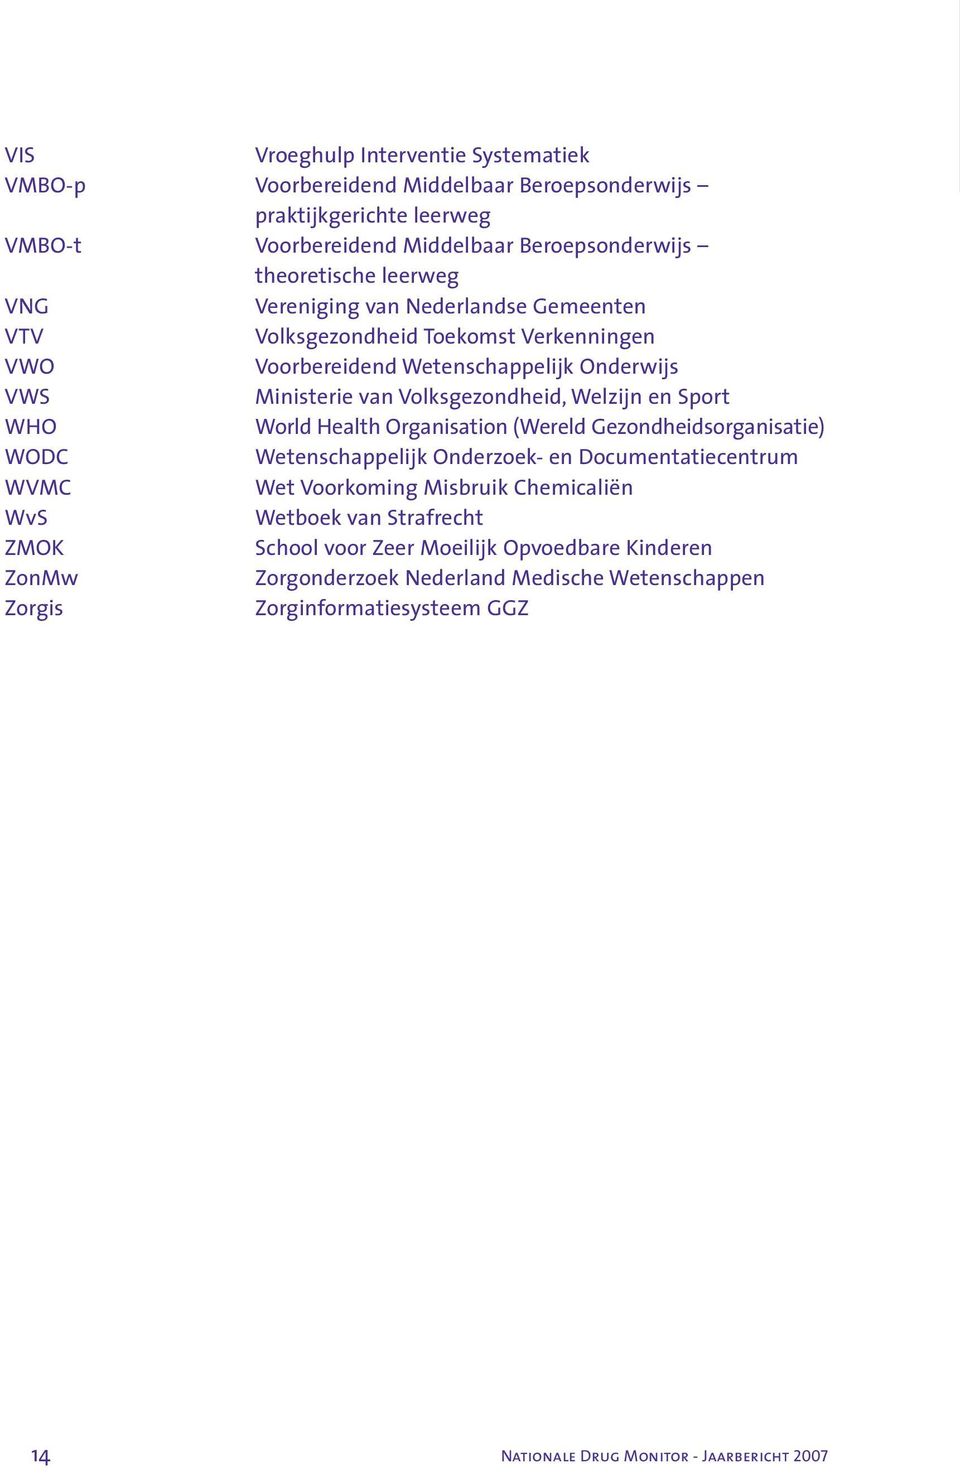 WHO World Health Organisation (Wereld Gezondheidsorganisatie) WODC Wetenschappelijk Onderzoek- en Documentatiecentrum WVMC Wet Voorkoming Misbruik Chemicaliën WvS Wetboek van